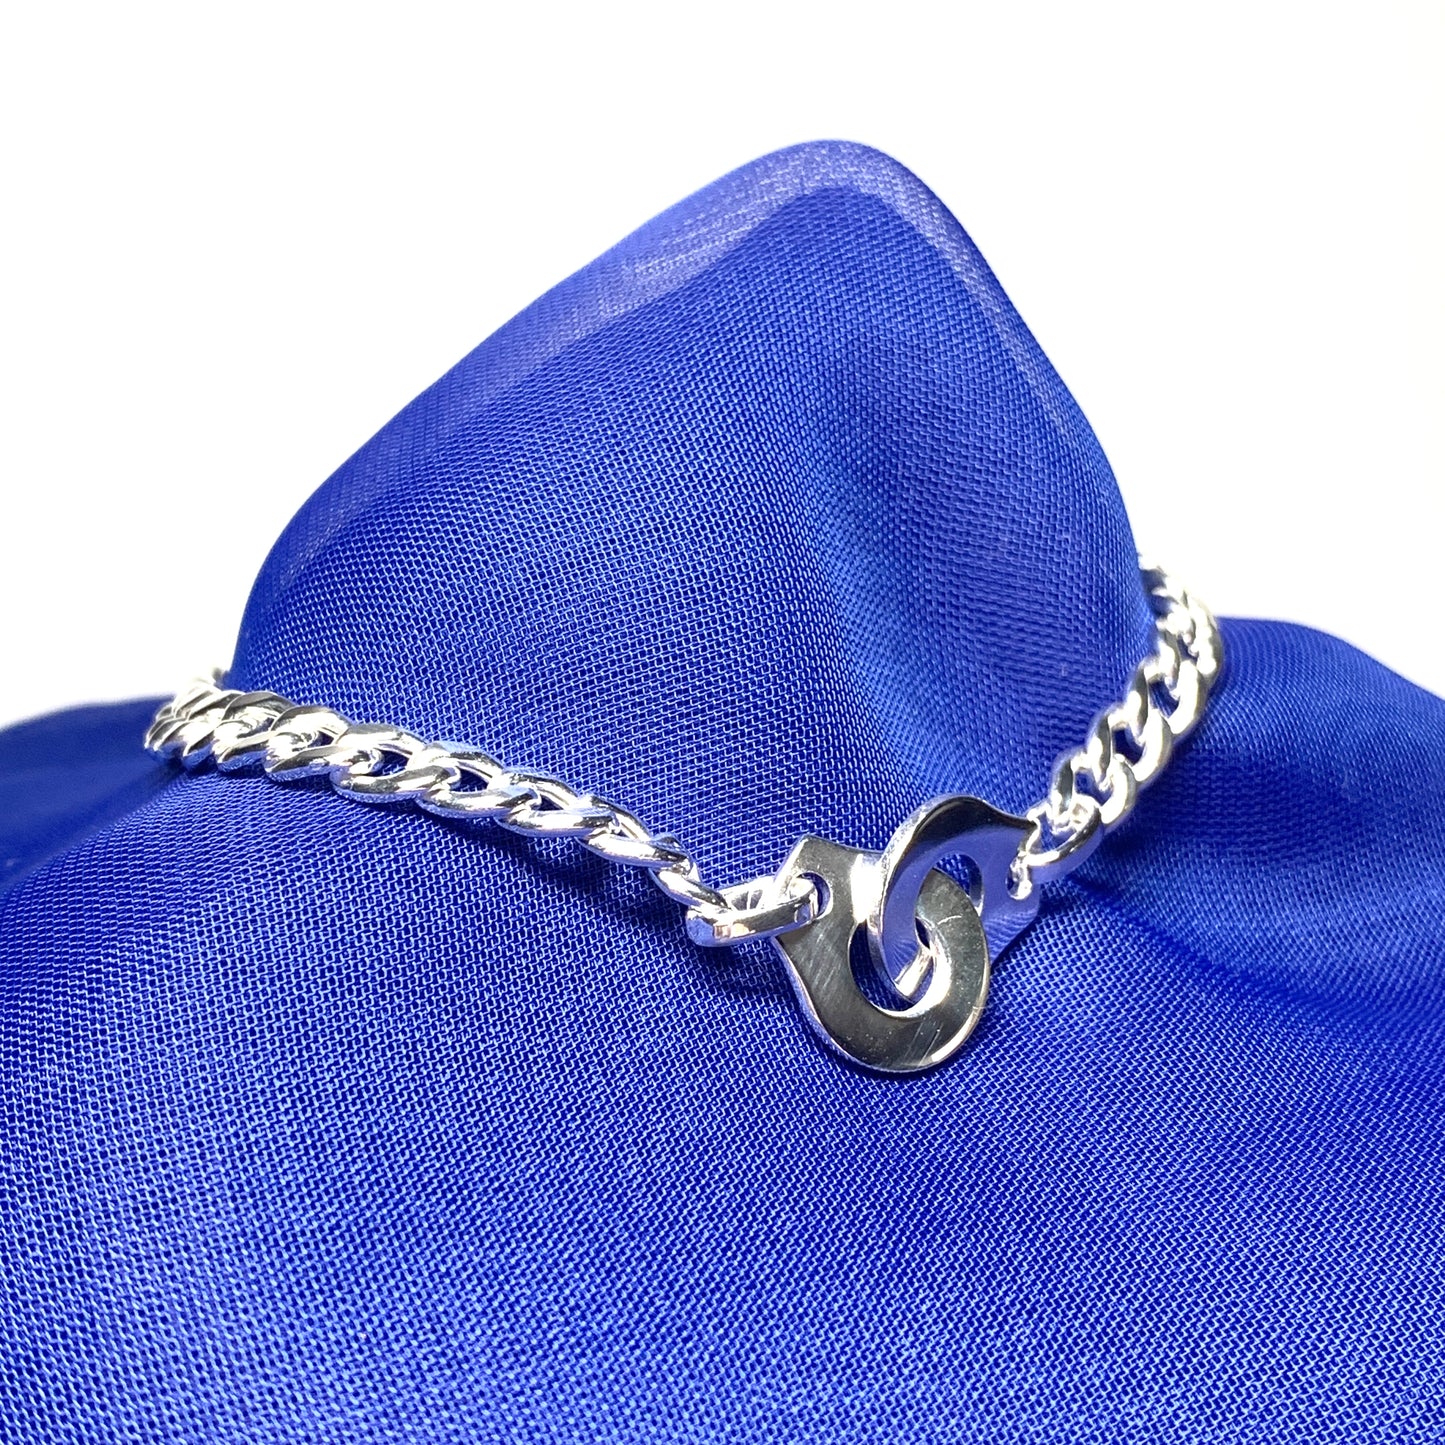 Ladies sterling silver curb link bracelet